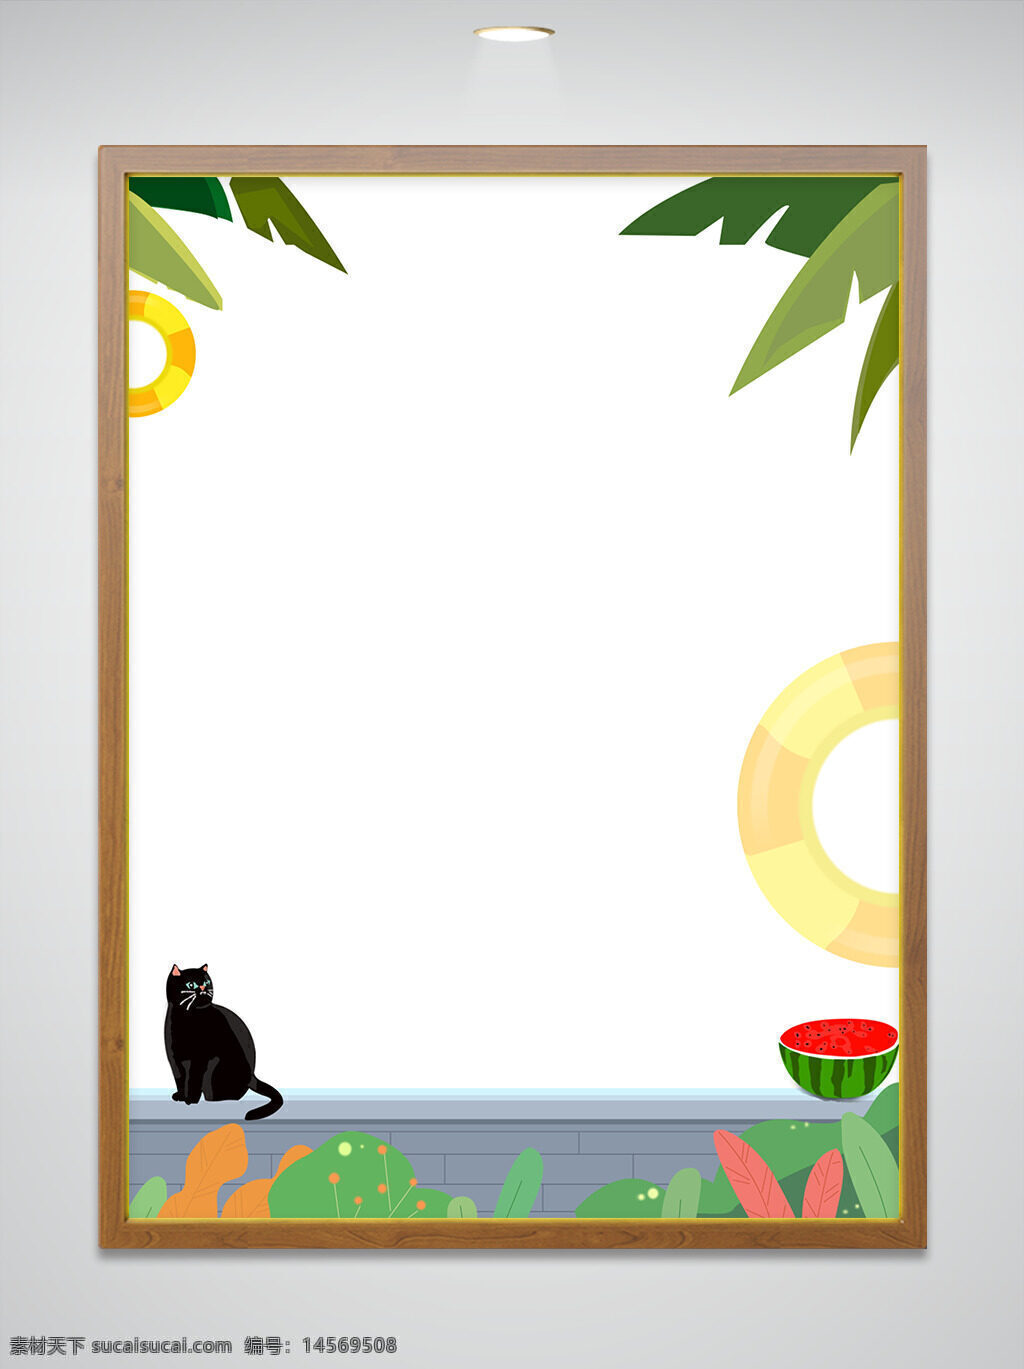 夏 纹理 墙 猫 西瓜 游泳圈 绿叶 植物 夏日 黑猫 椰树 手绘 插画 平面 背景